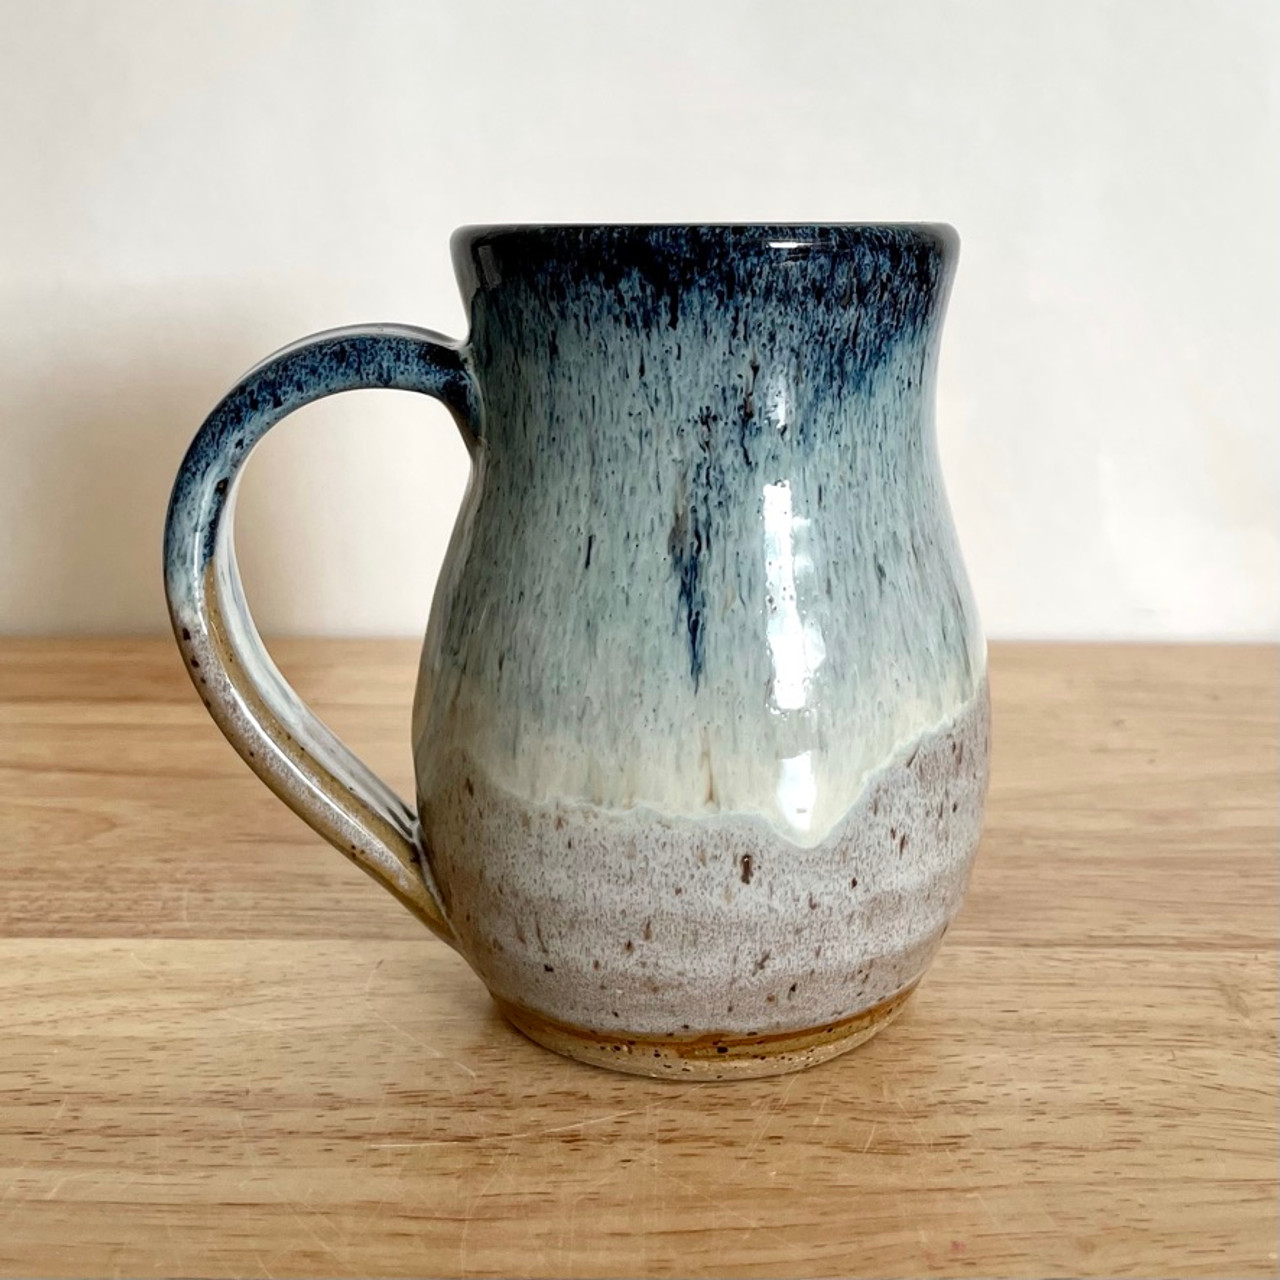 16oz Handmade in USA Ceramic Mug- INDIGO BLUE